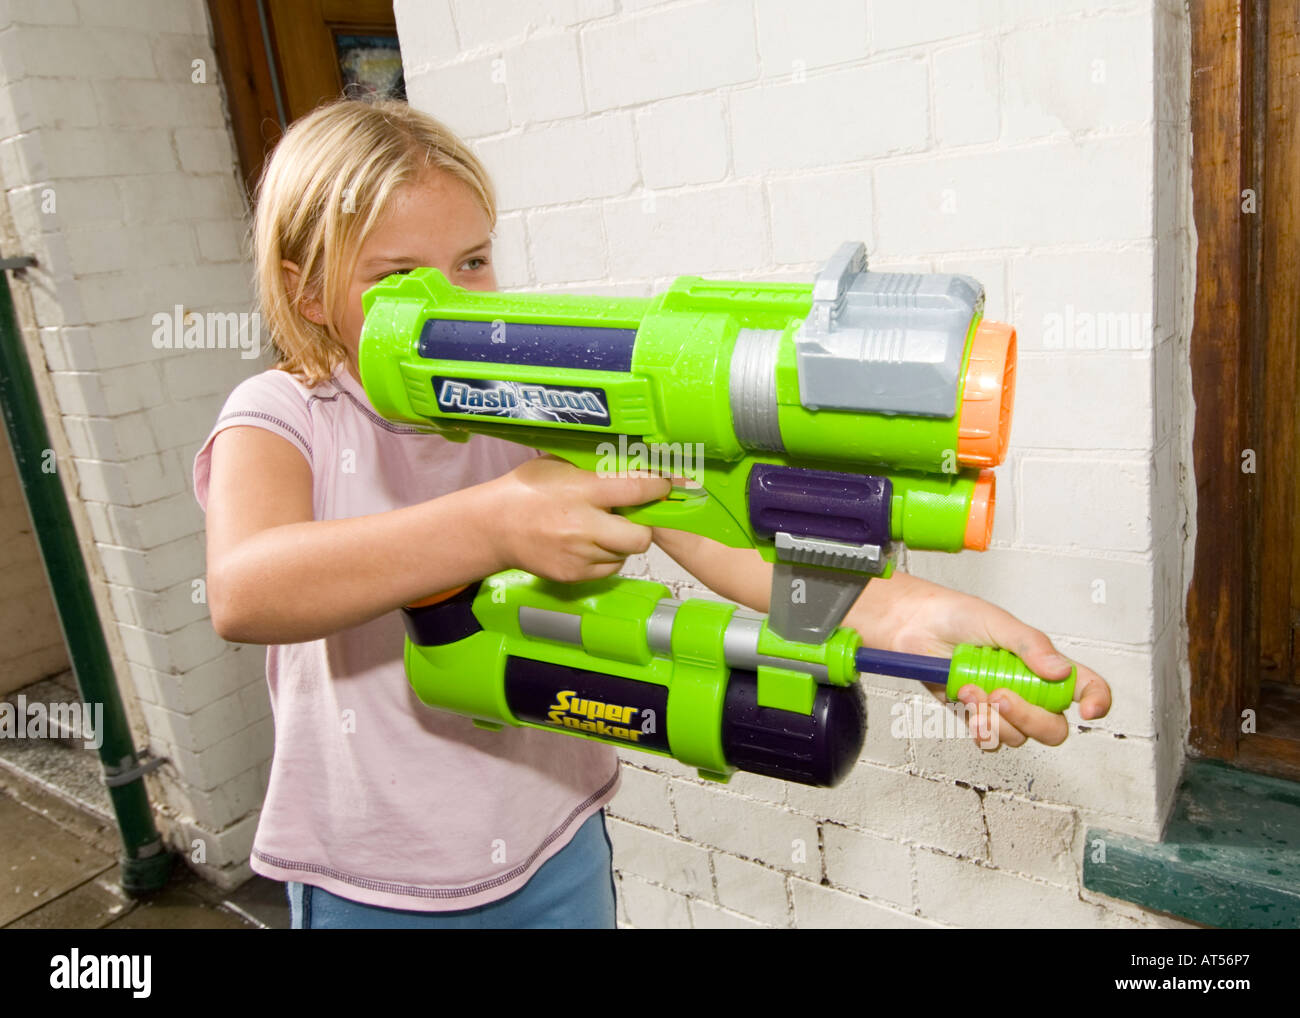 Junge Mädchen spielen mit enormen Pumpe Action Wasserpistole auf der Suche  nach ihrem nächsten Ziel in einem Straßenkampf, UK Stockfotografie - Alamy